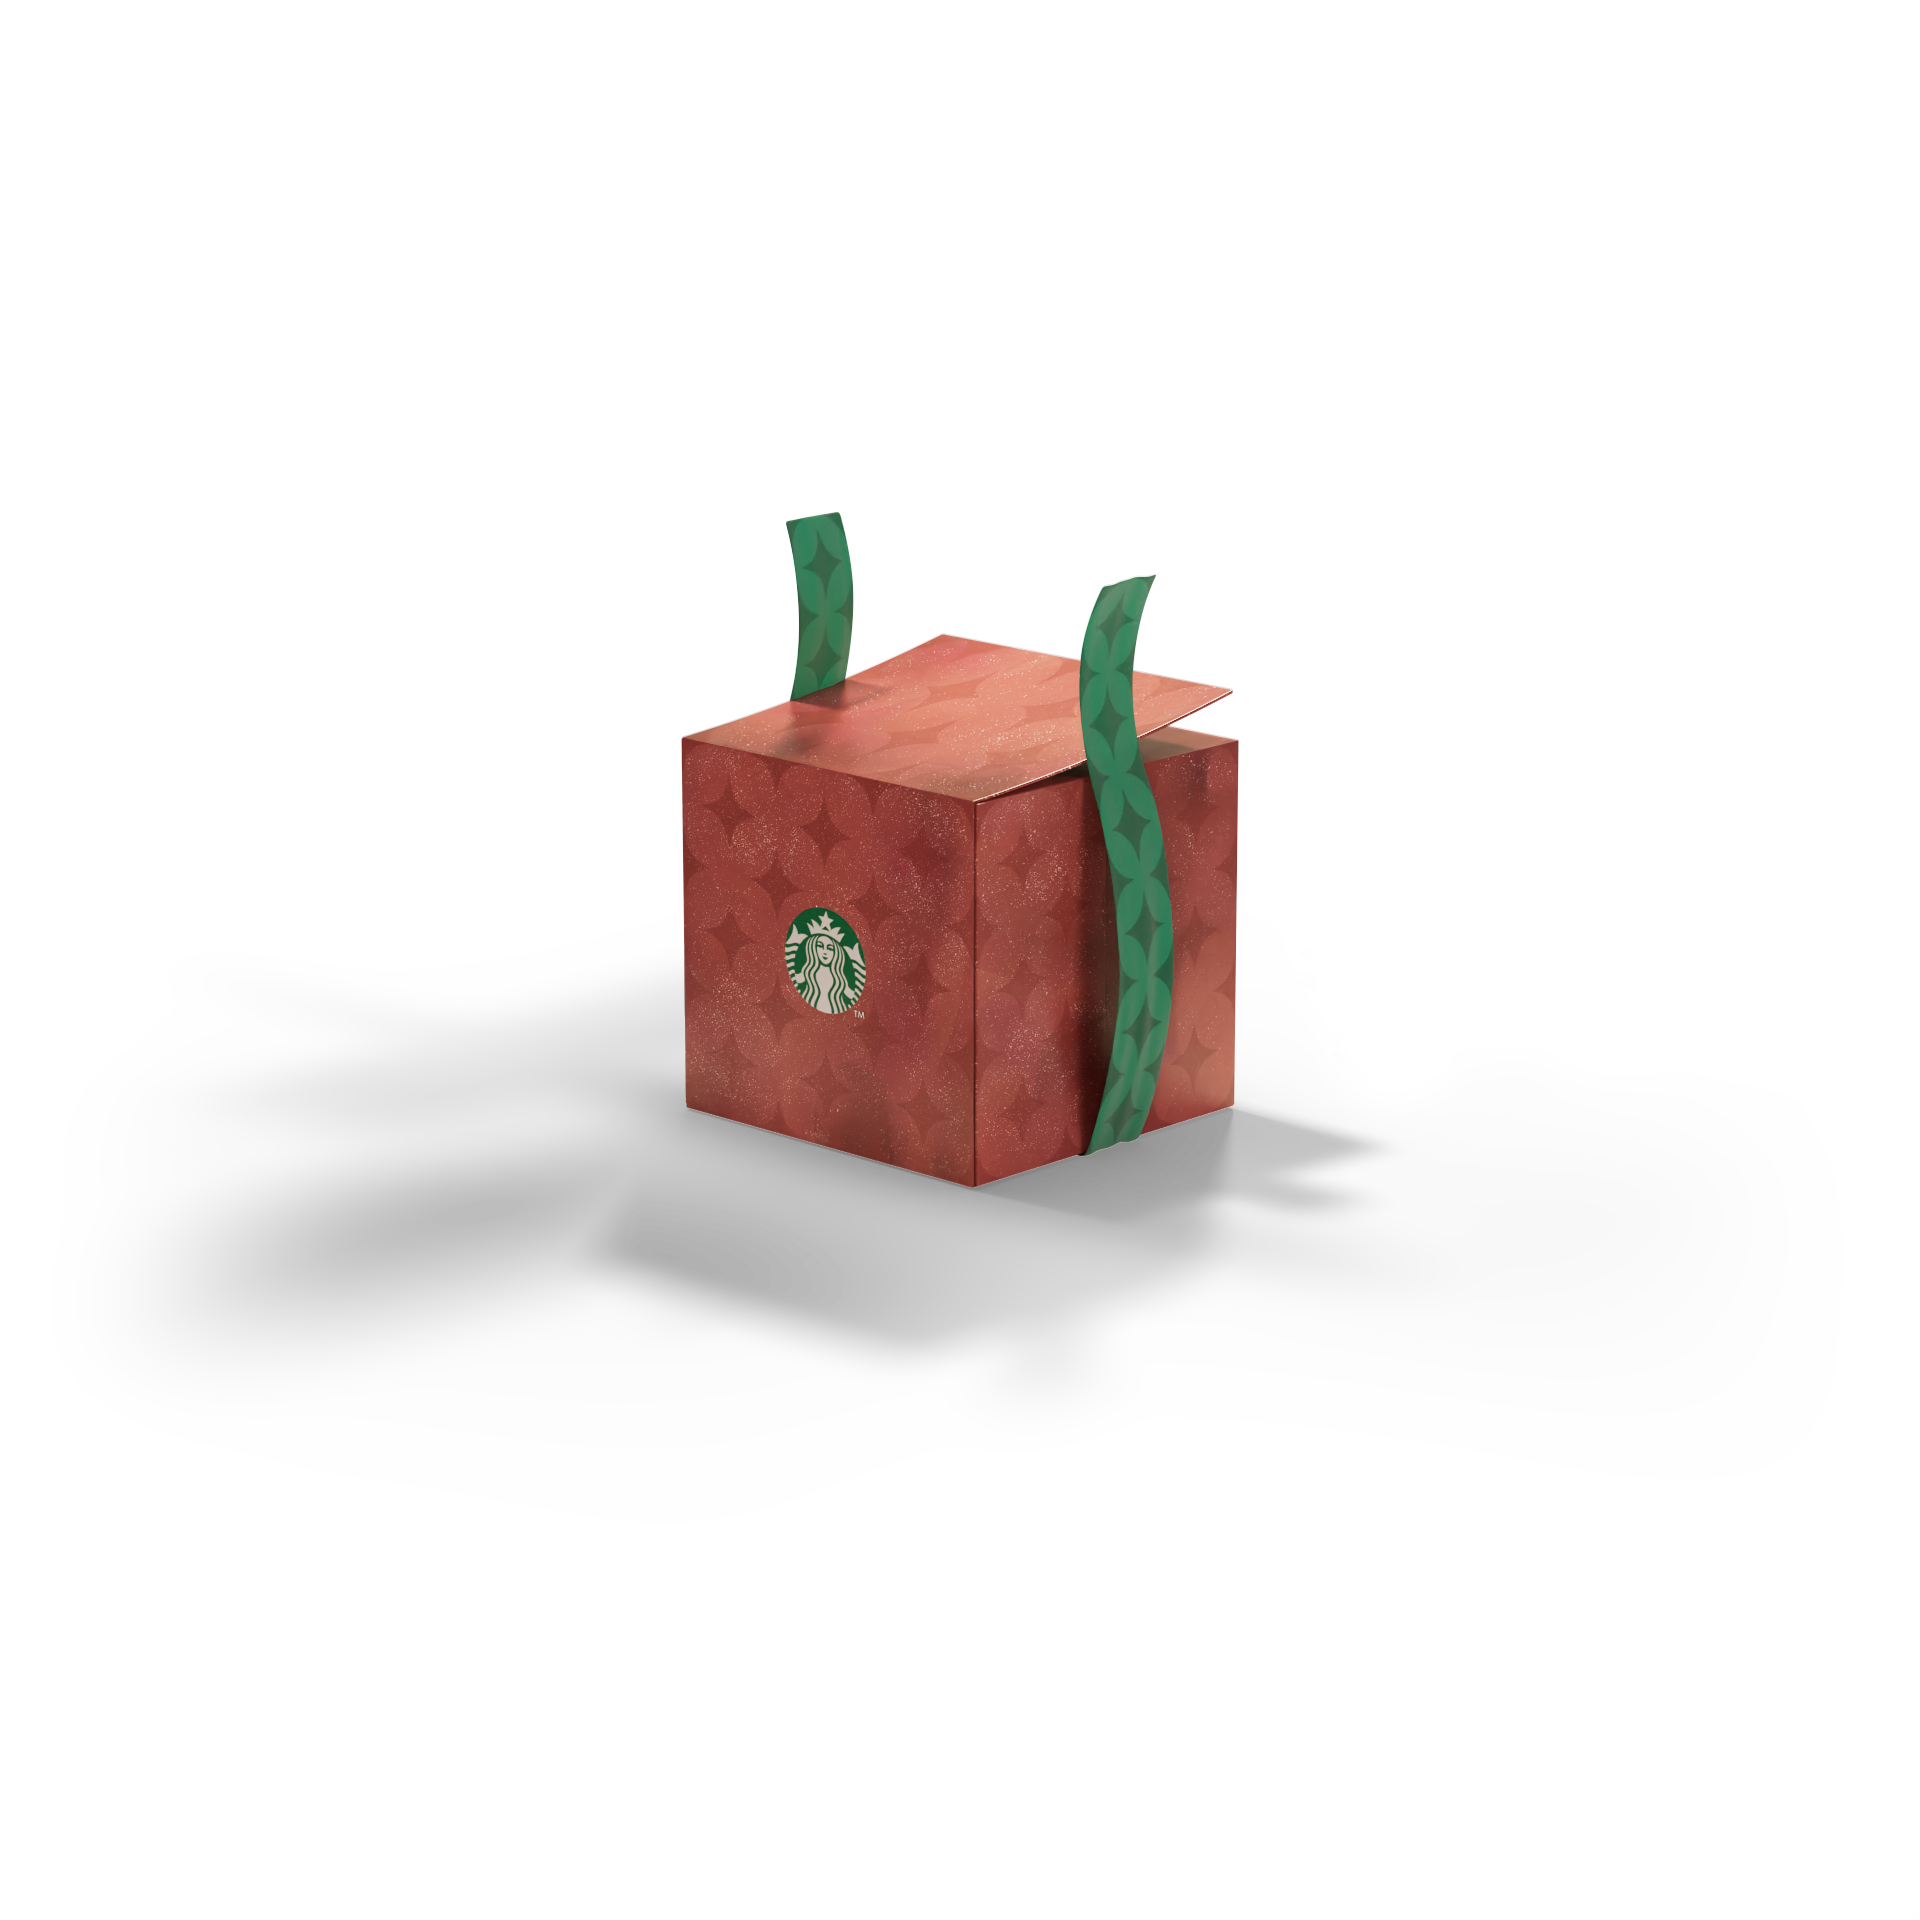 gift box 3